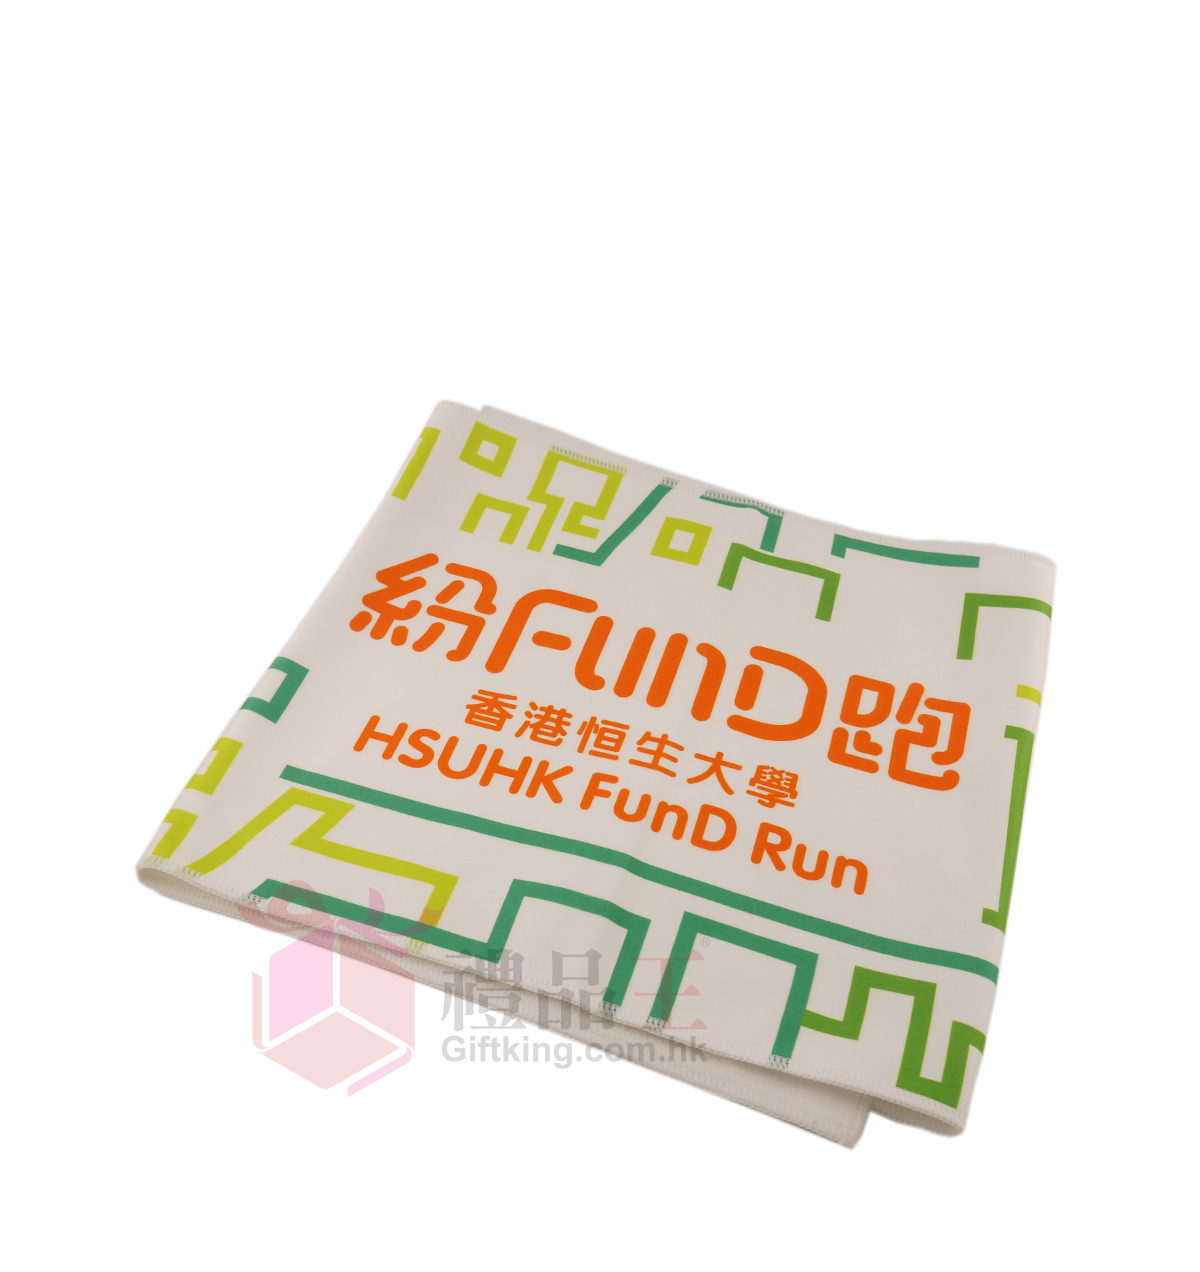 HSUHK FunD Run Towel (Sport Gift)